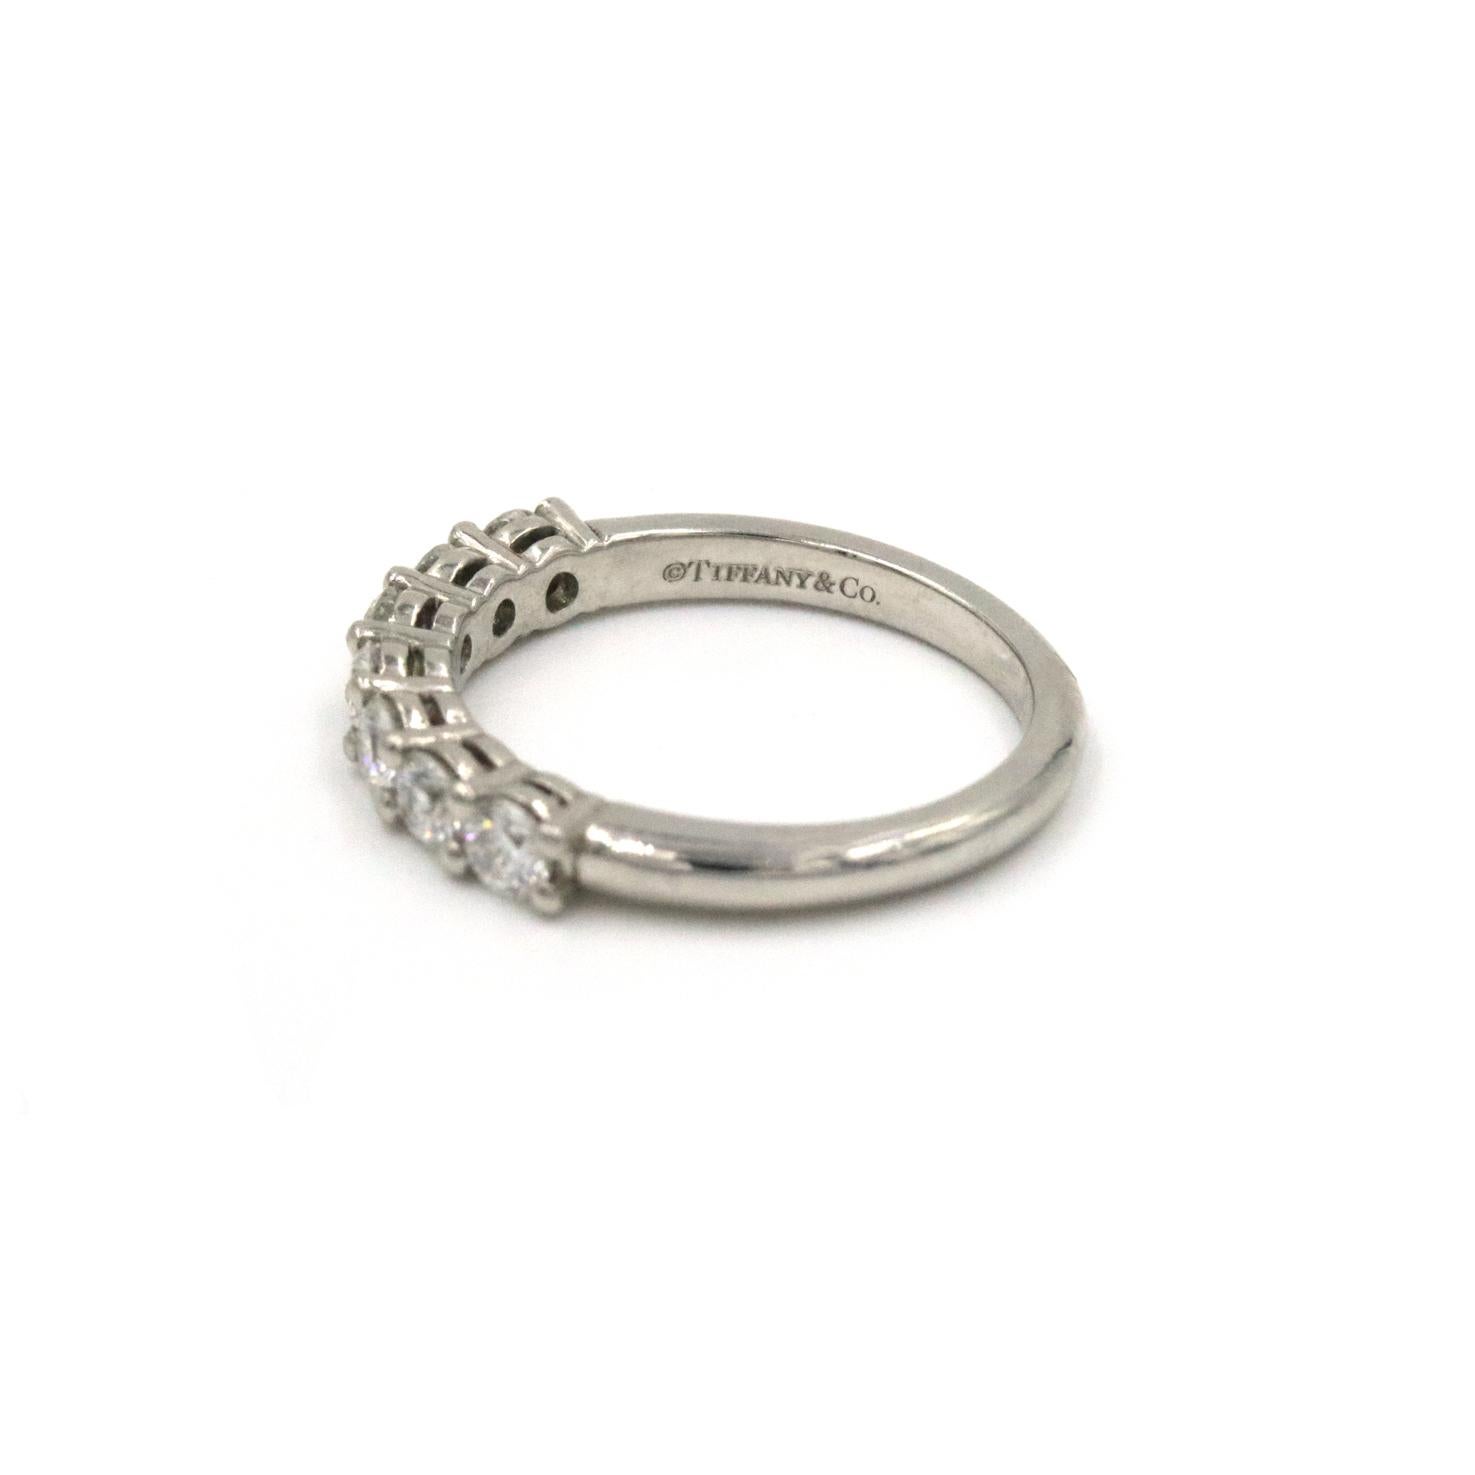 Tiffany & Co. Diamant-Ehering. Diese Hochzeit Band verfügt über 7 runde Diamanten .63 CTW und ist in Platin gesetzt.